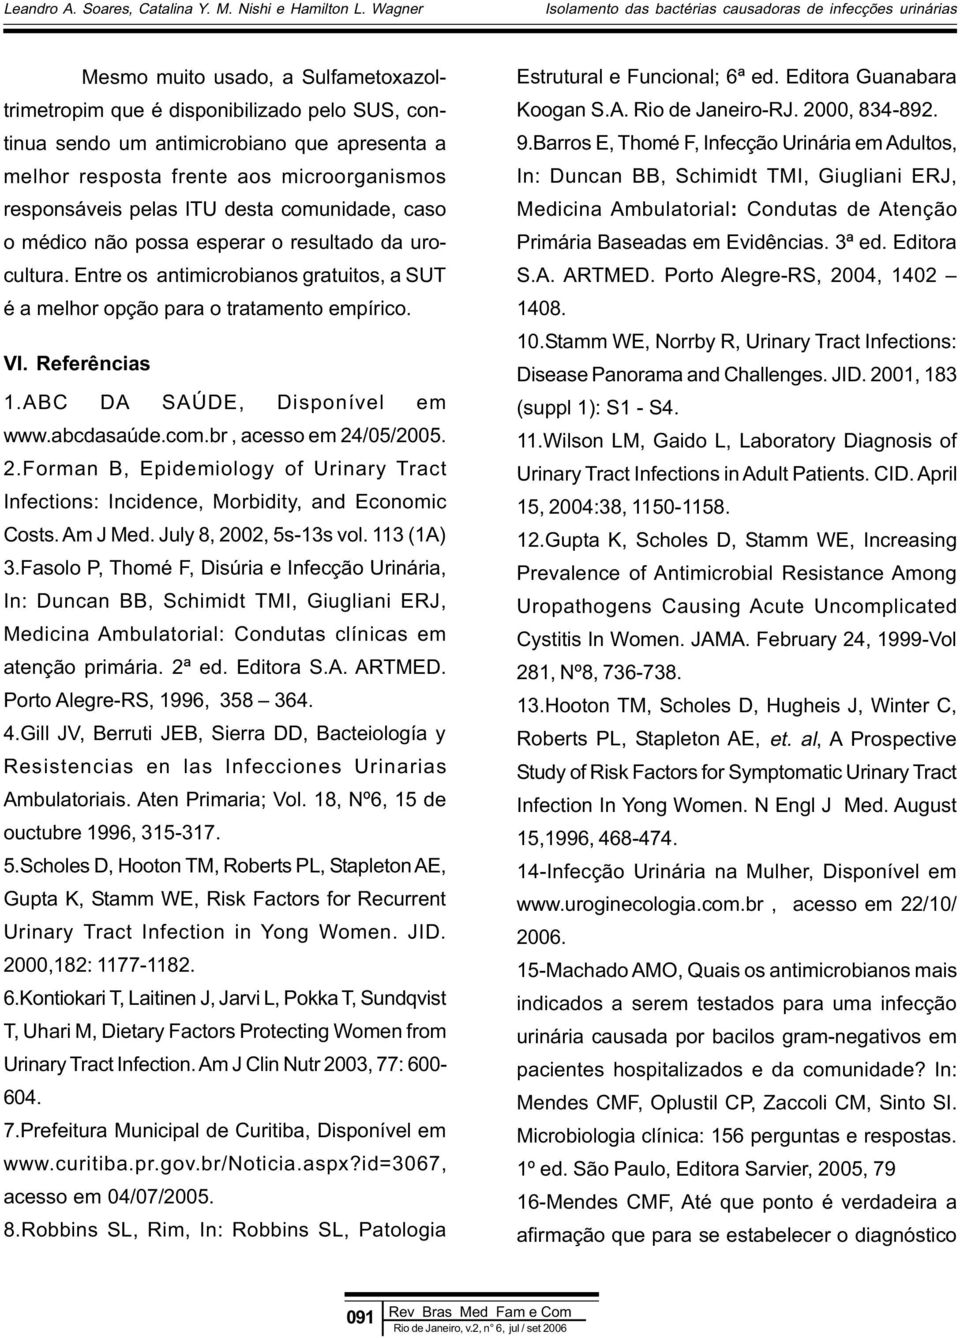 ABC DA SAÚDE, Disponível em www.abcdasaúde.com.br, acesso em 24/05/2005. 2.Forman B, Epidemiology of Urinary Tract Infections: Incidence, Morbidity, and Economic Costs. Am J Med.